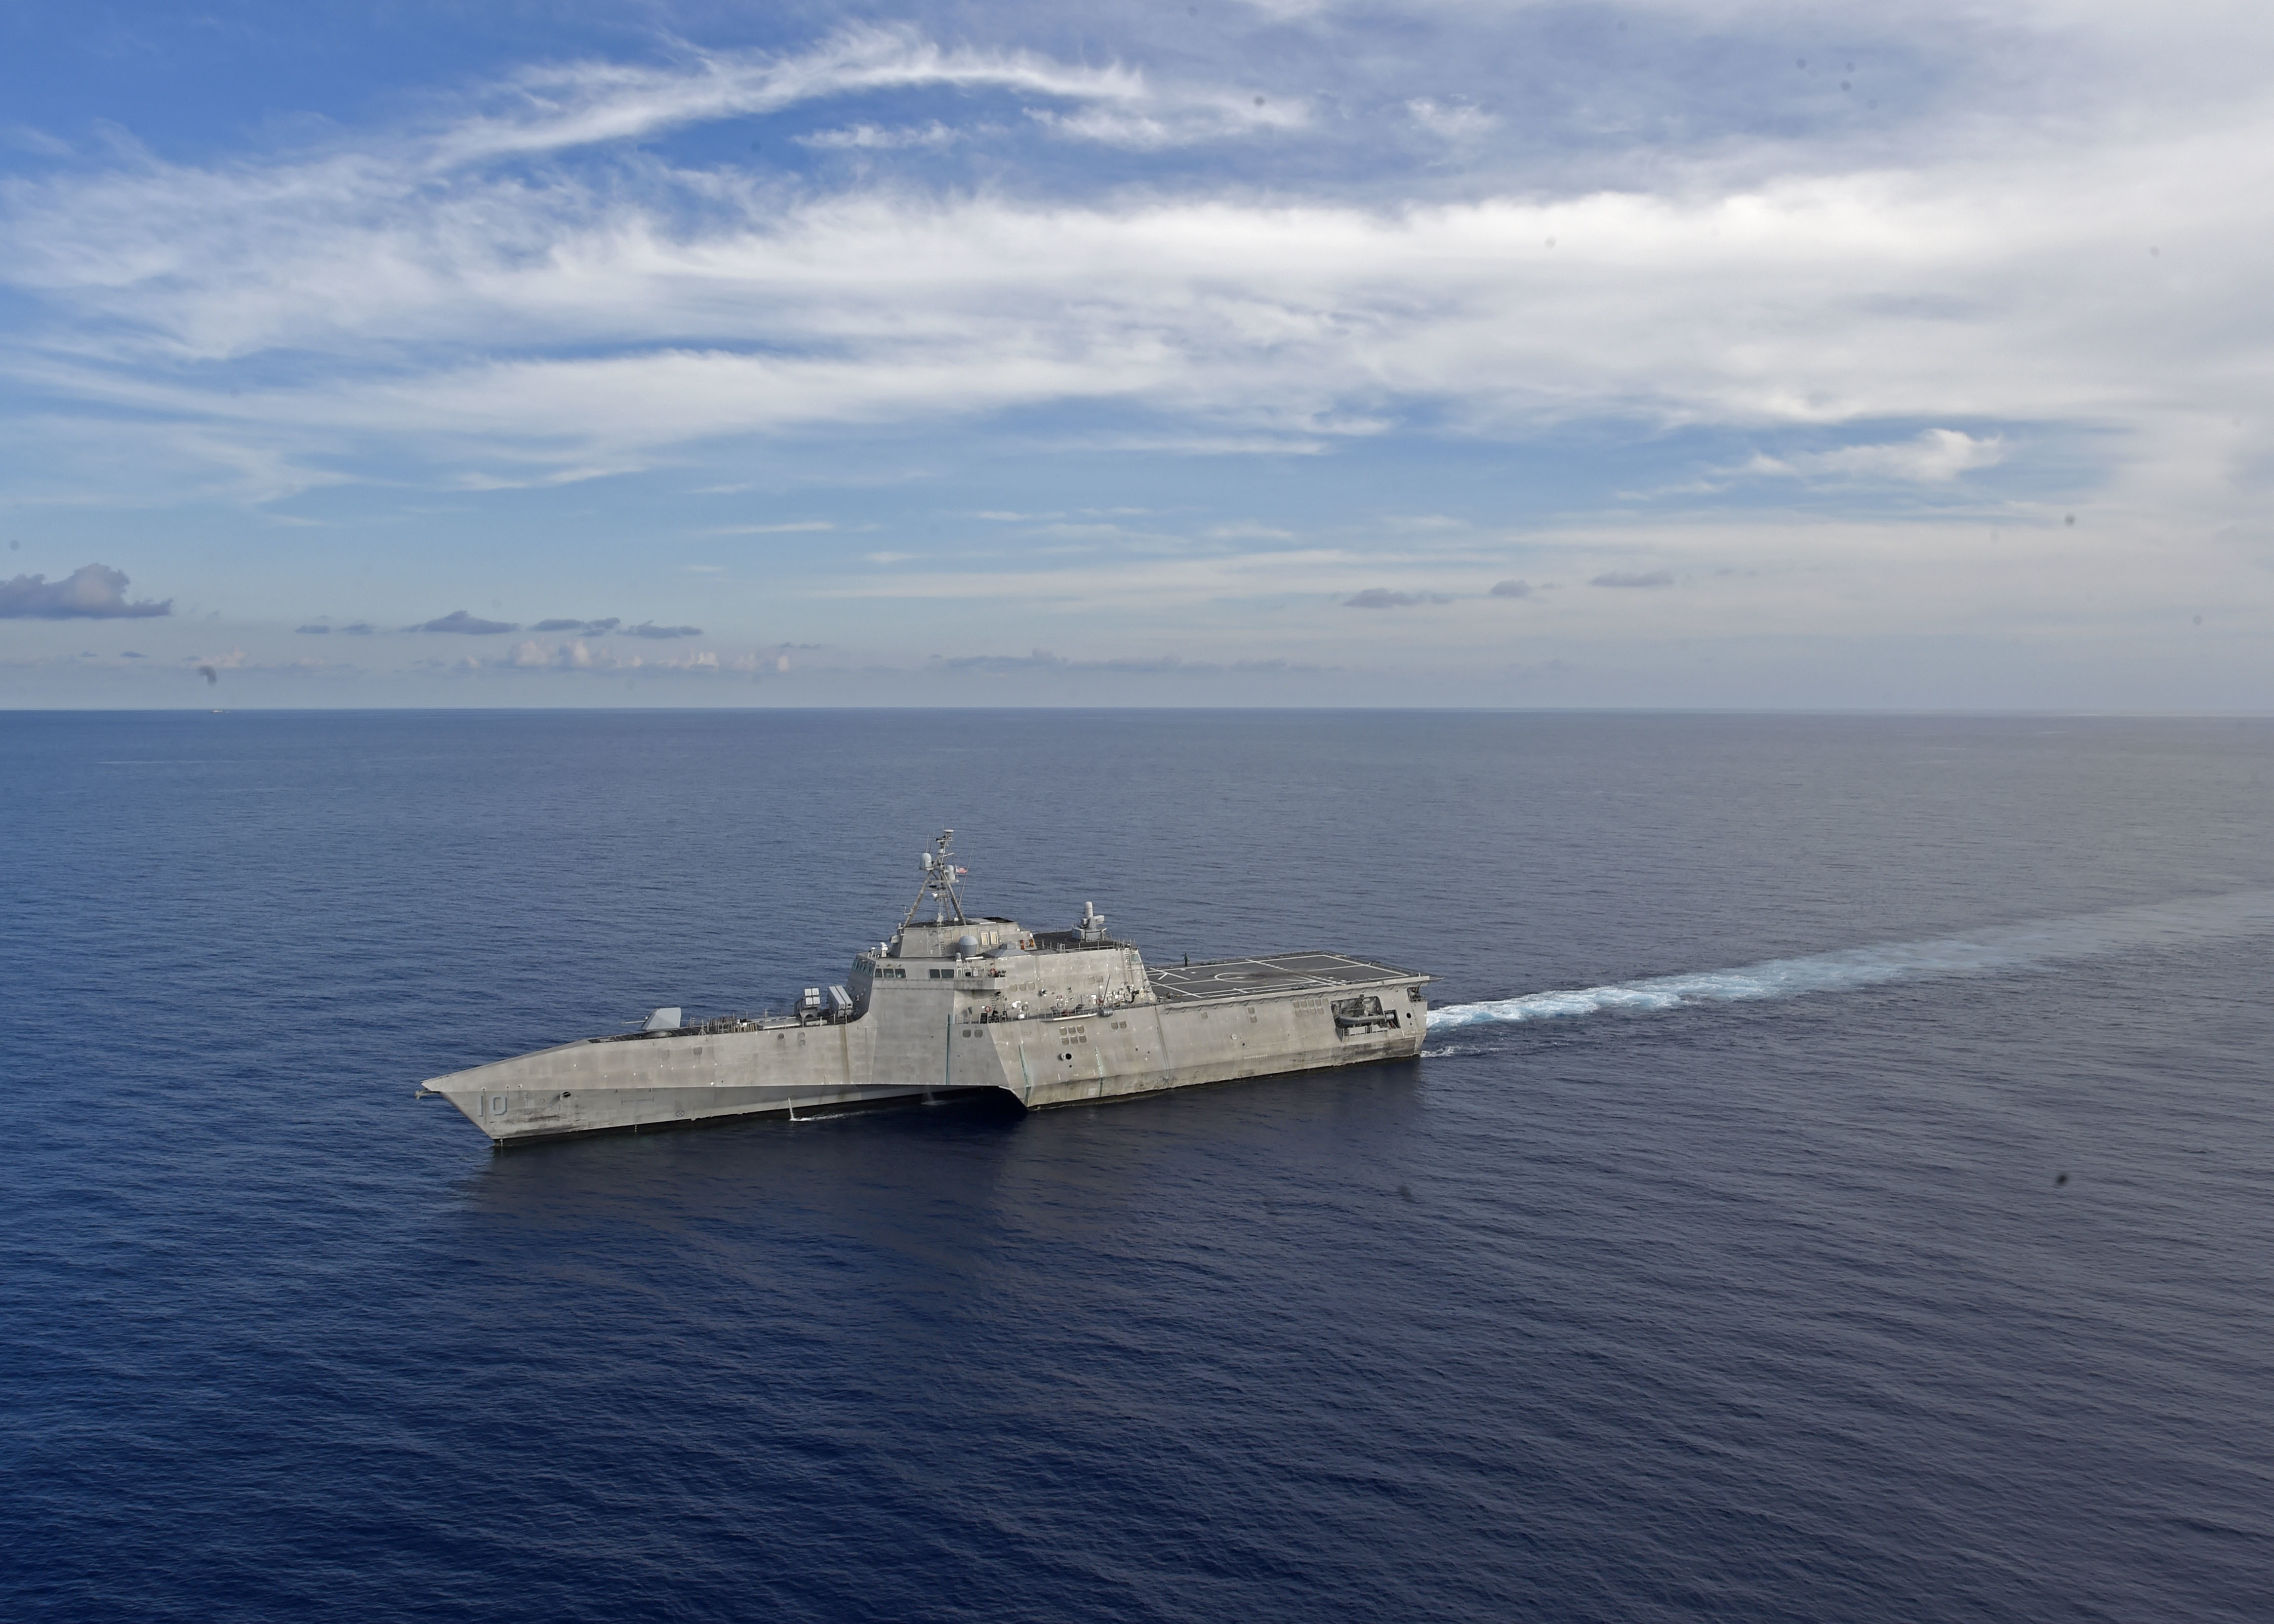 Американский боевой корабль прибрежной зоны типа LCS  (littoral combat ship) варианта  Independence  USS Gabrielle Giffords (LCS 10) в Южно-Китайском море, фото сделано 13 мая 2020 года